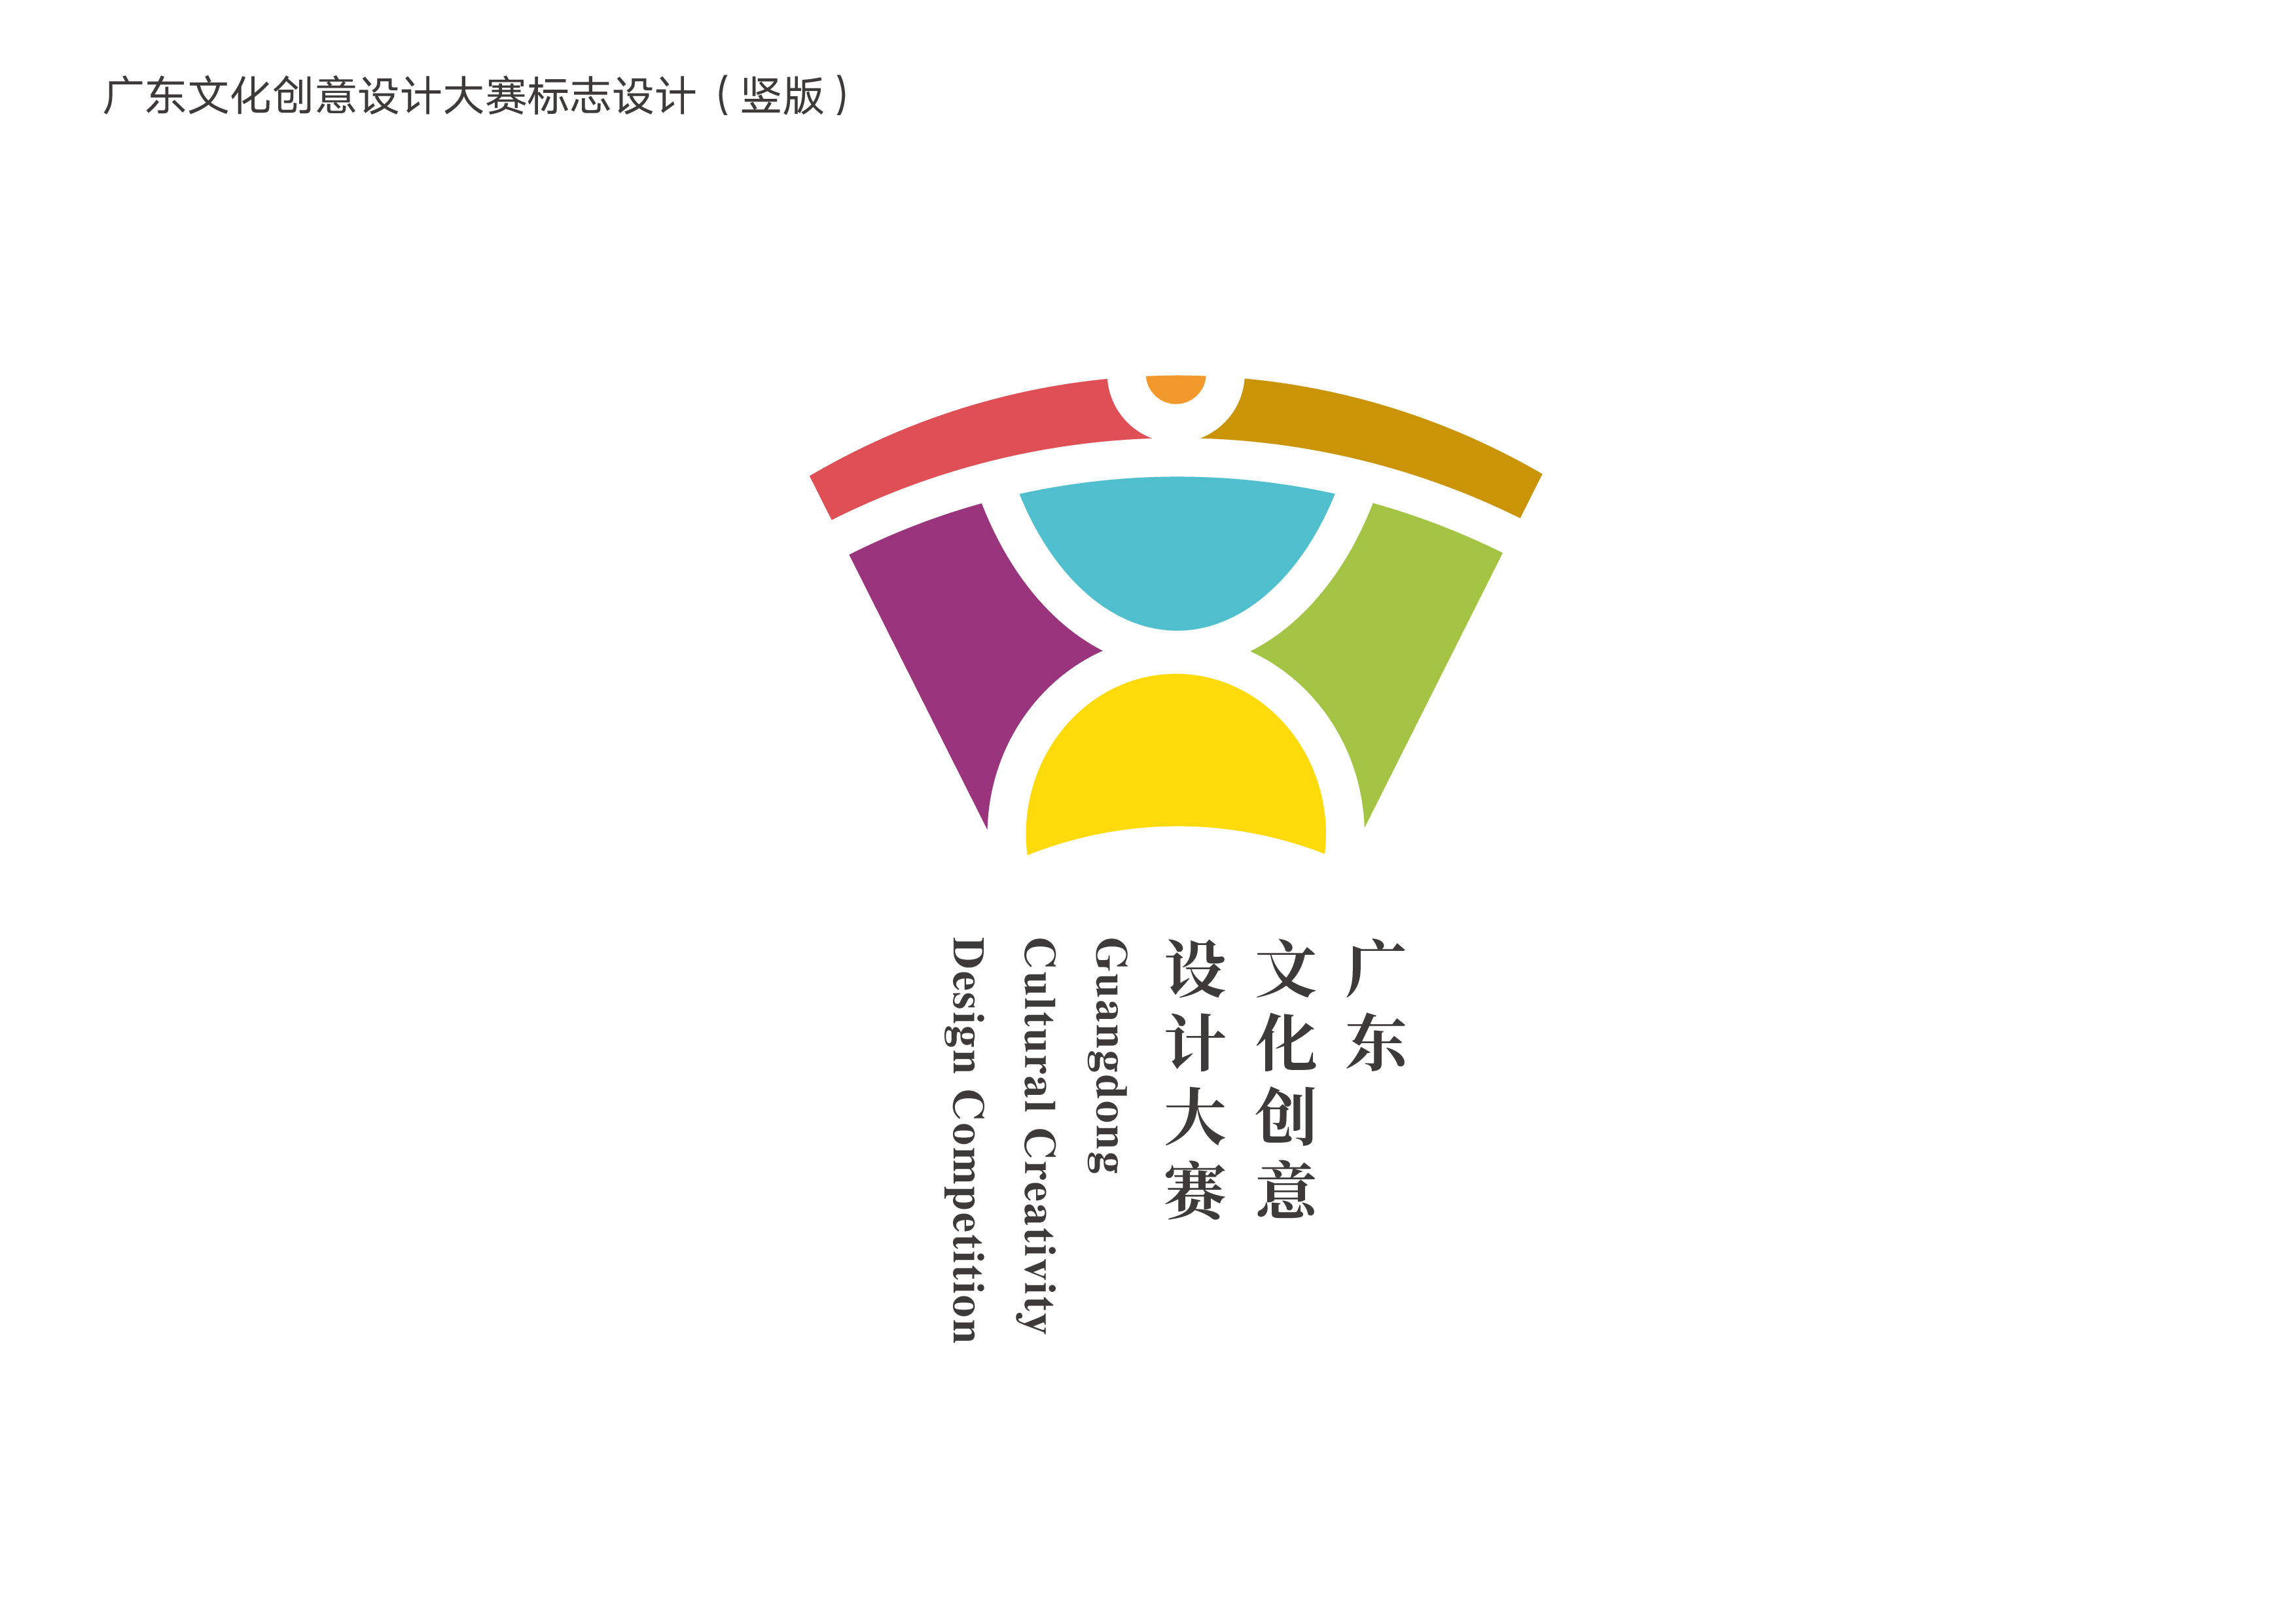 广东文化创意设计大赛logo 征集结果公示